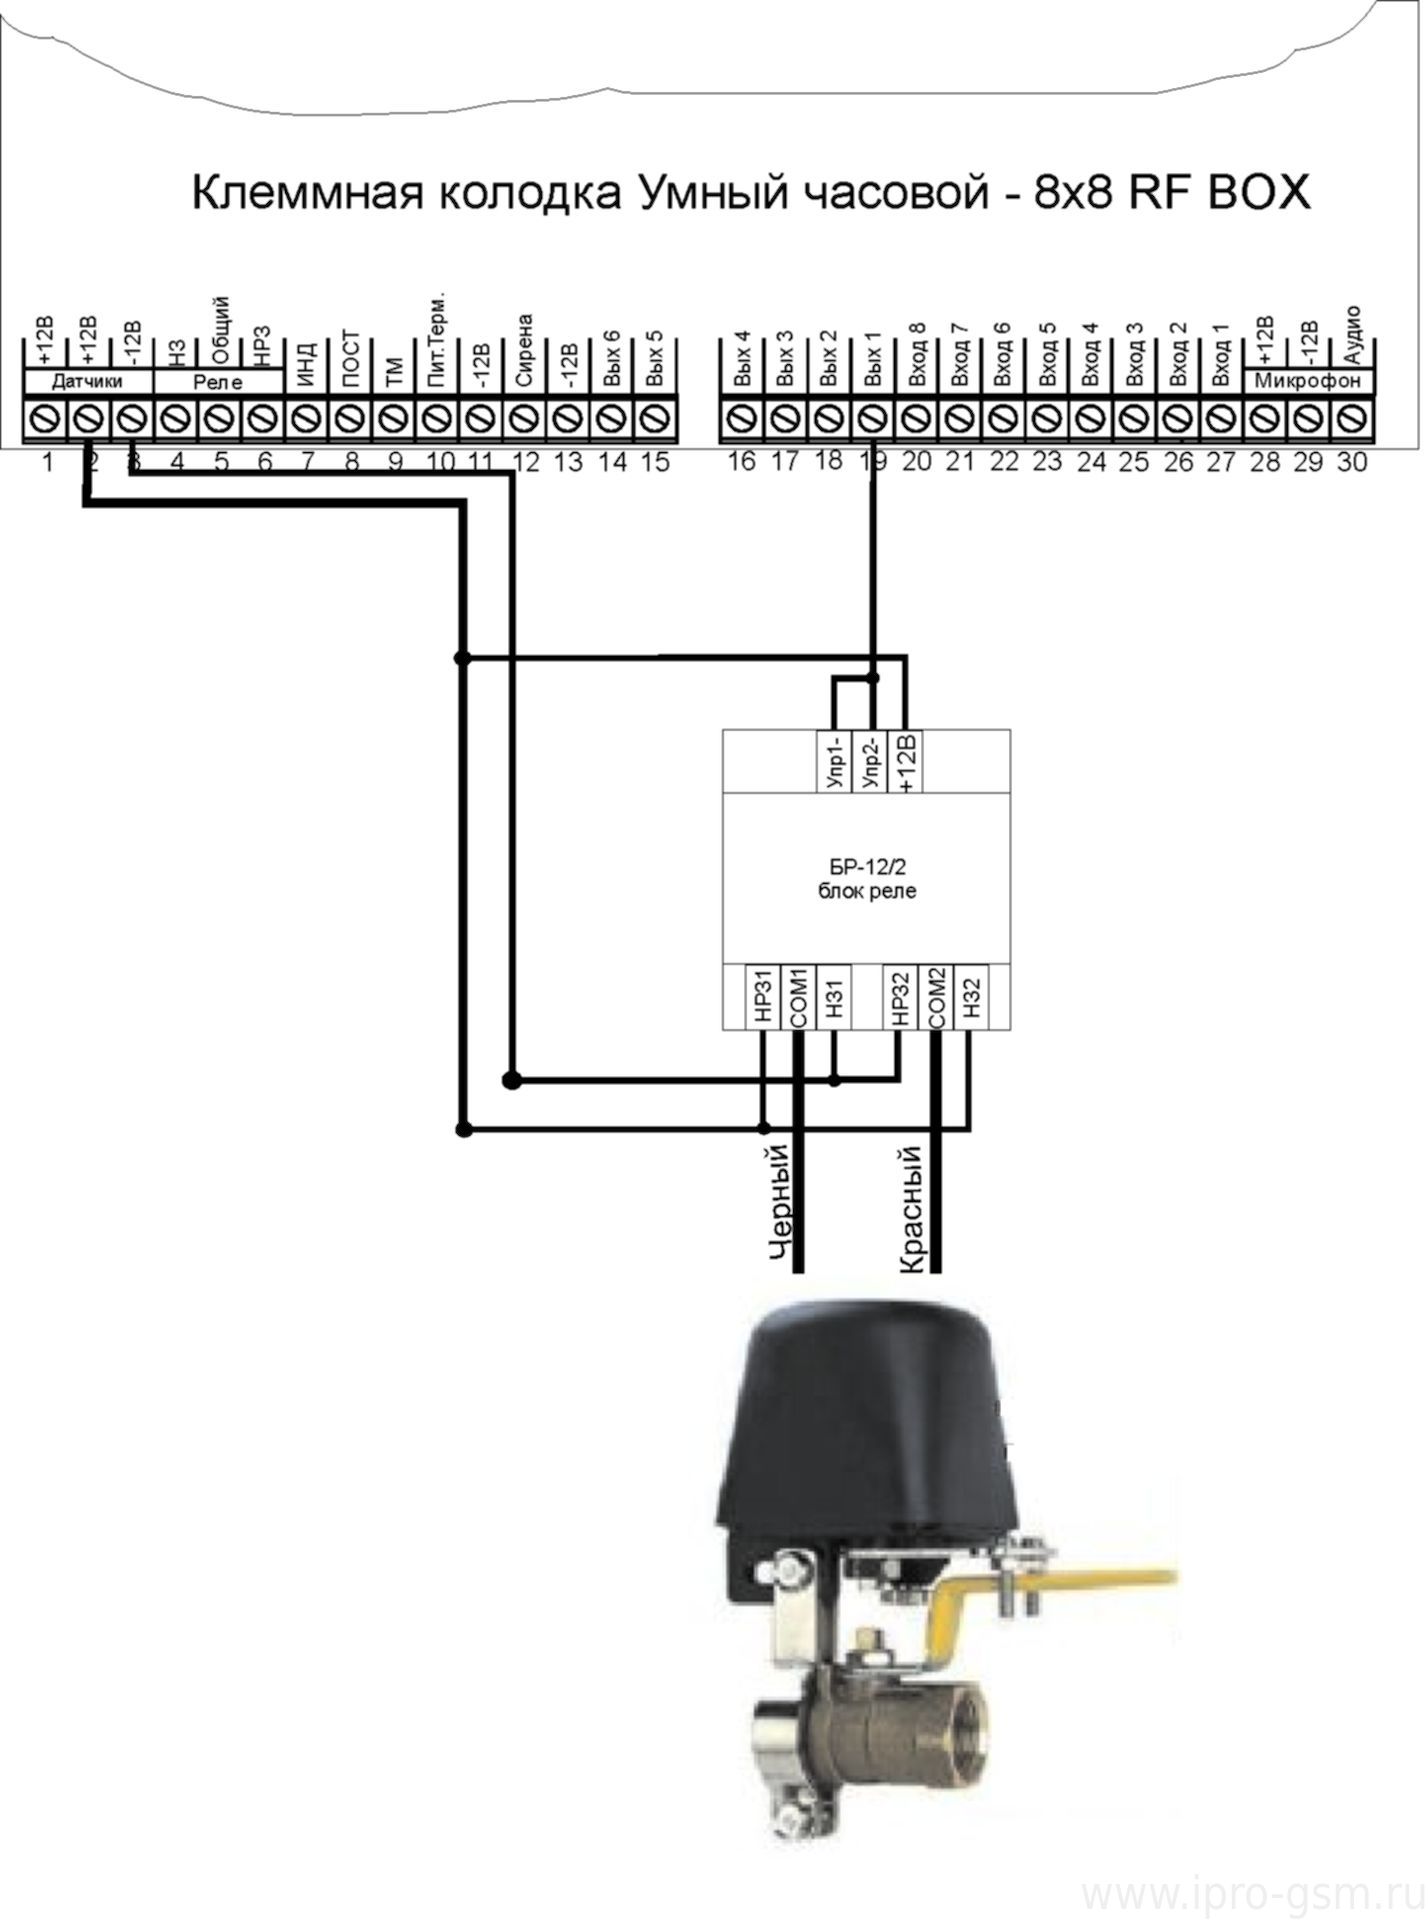 Схема подключения электропривода на шаровой кран к GSM-сигнализации Часовой 8х8 RF BOX